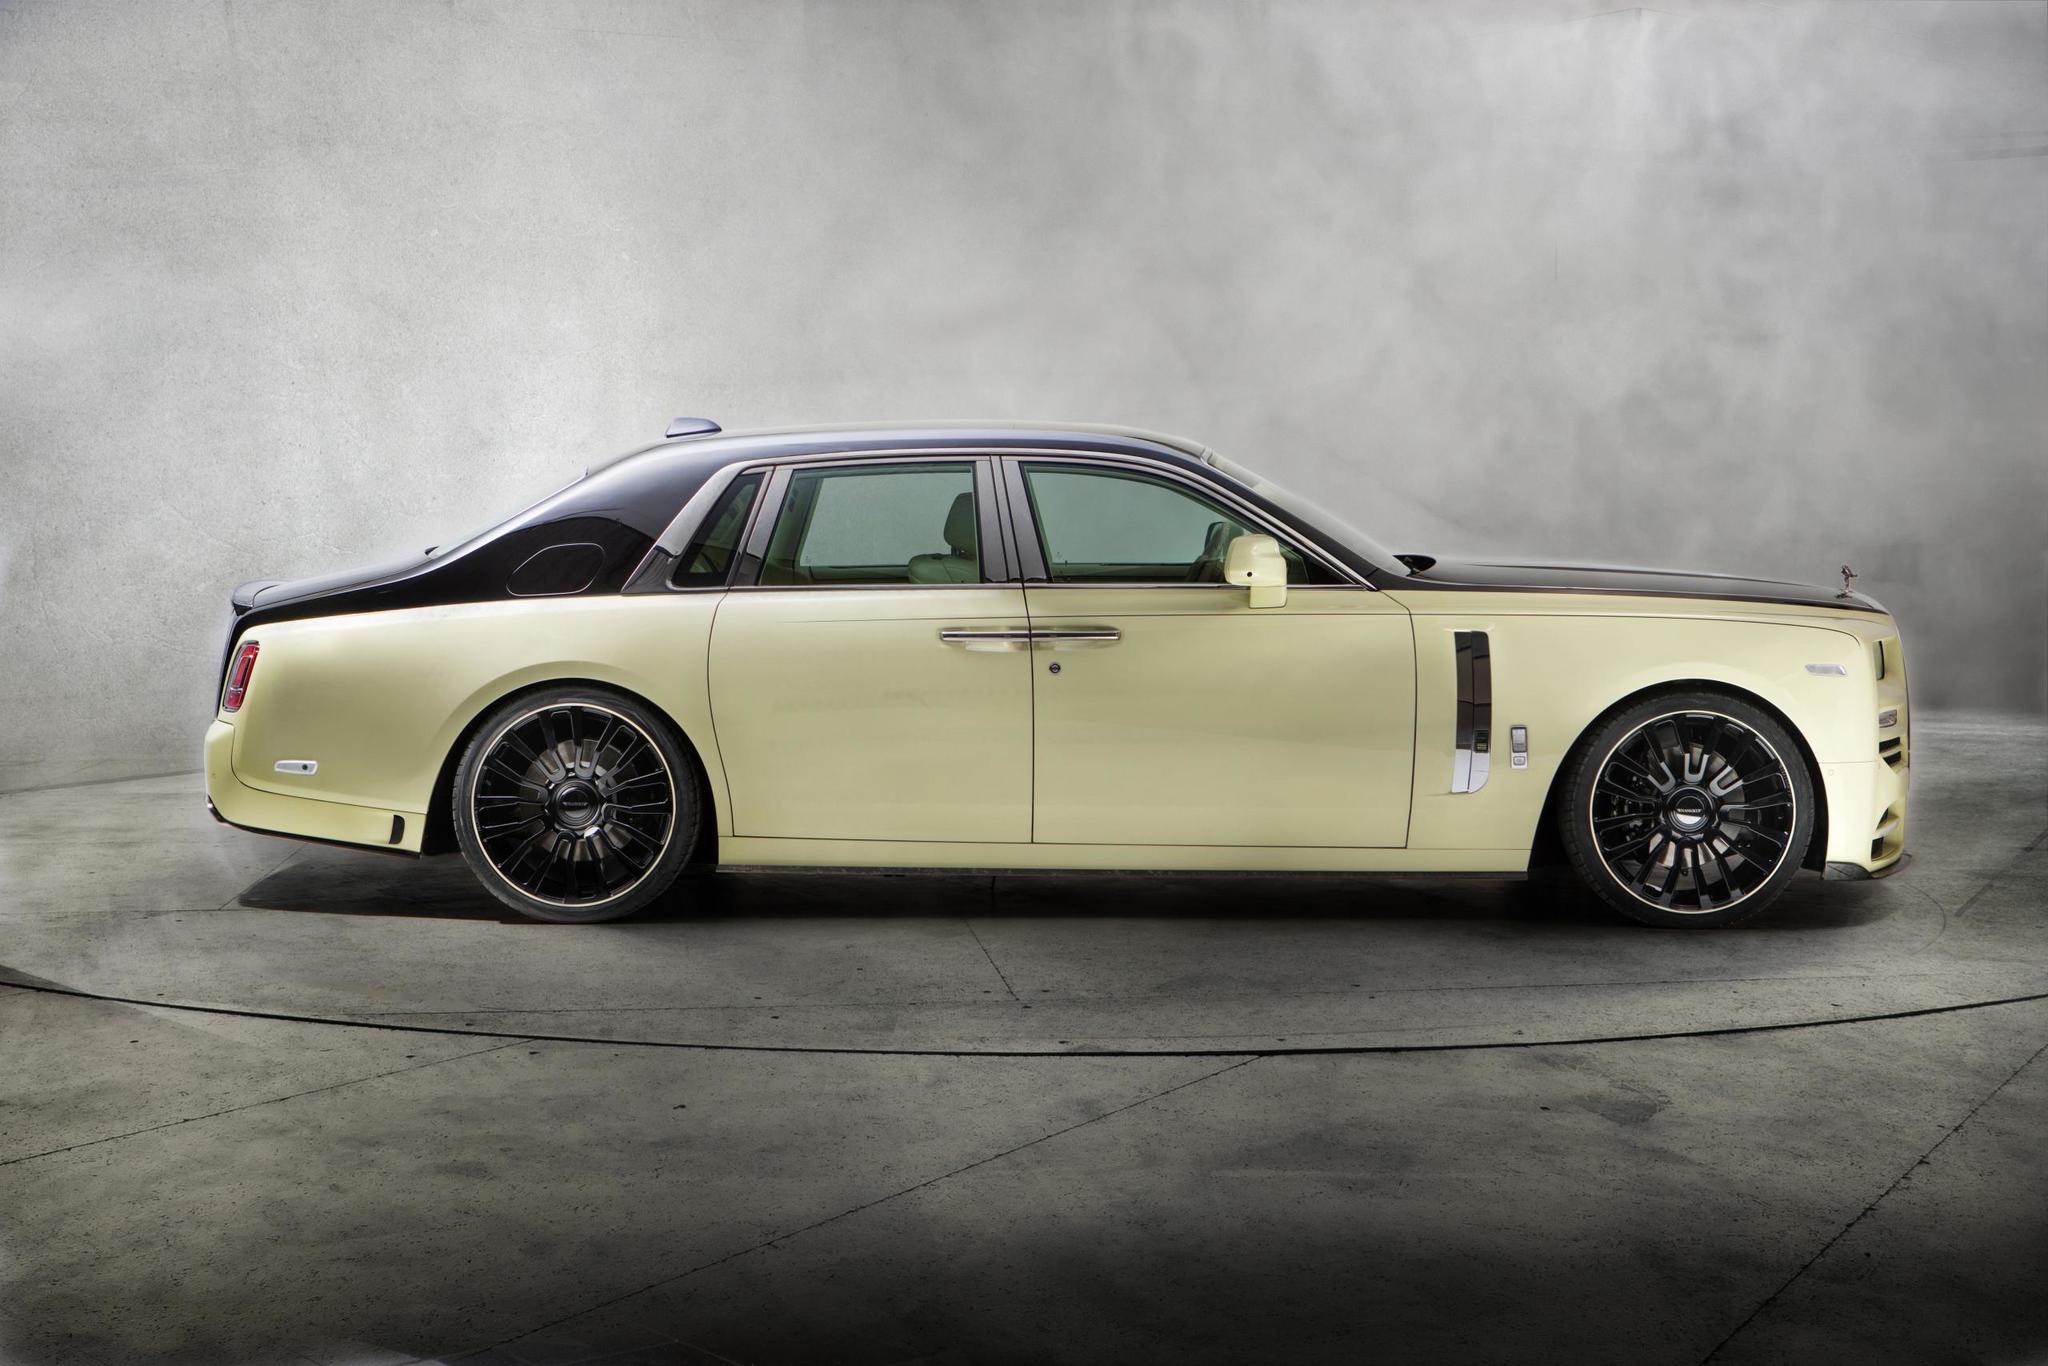 Mansory body kit for Rolls-Royce Phantom carbon